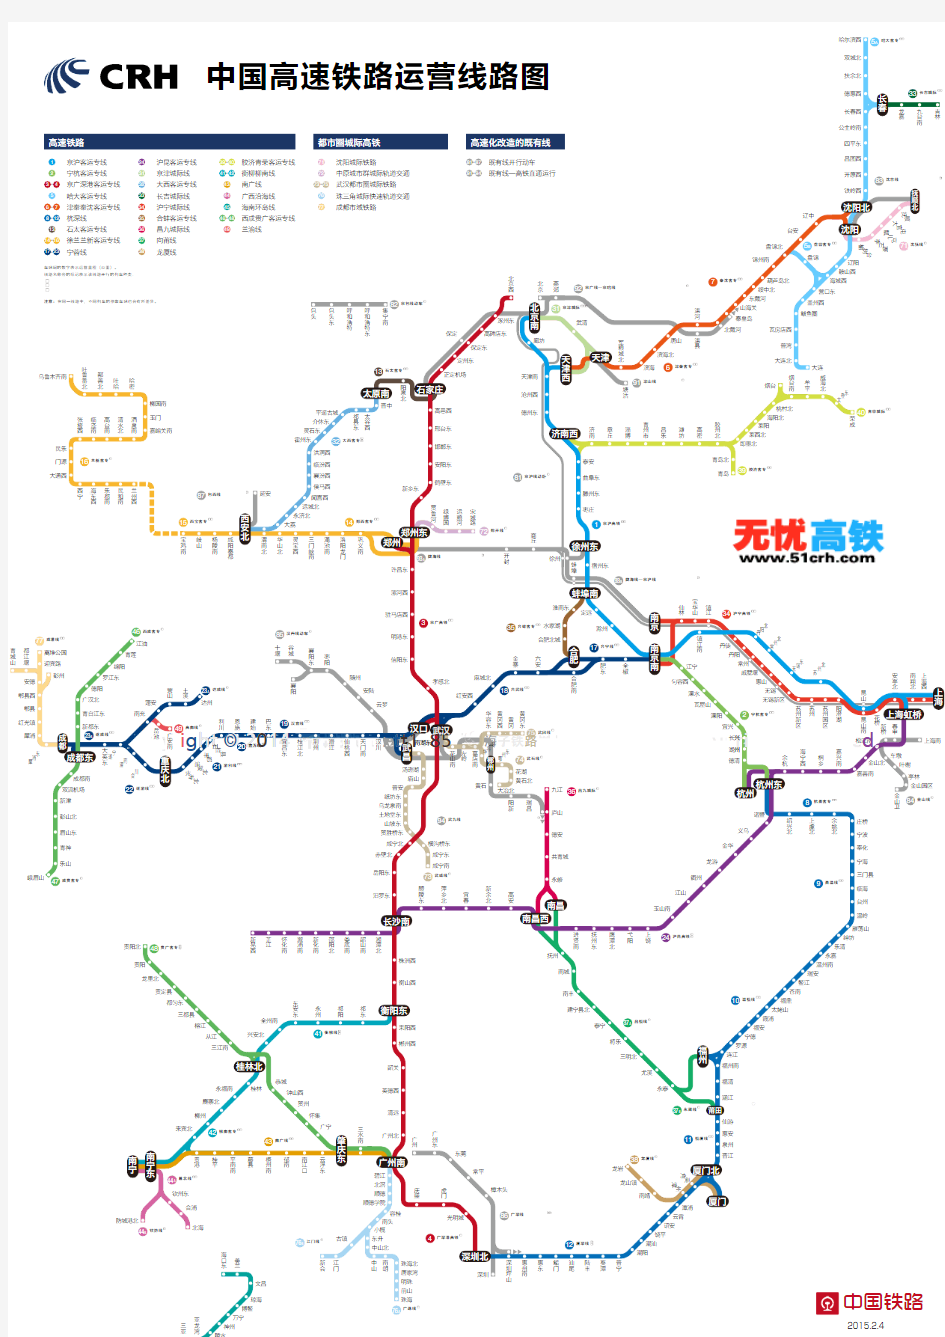 [最新]中国高铁运营线路图-中国高铁版图